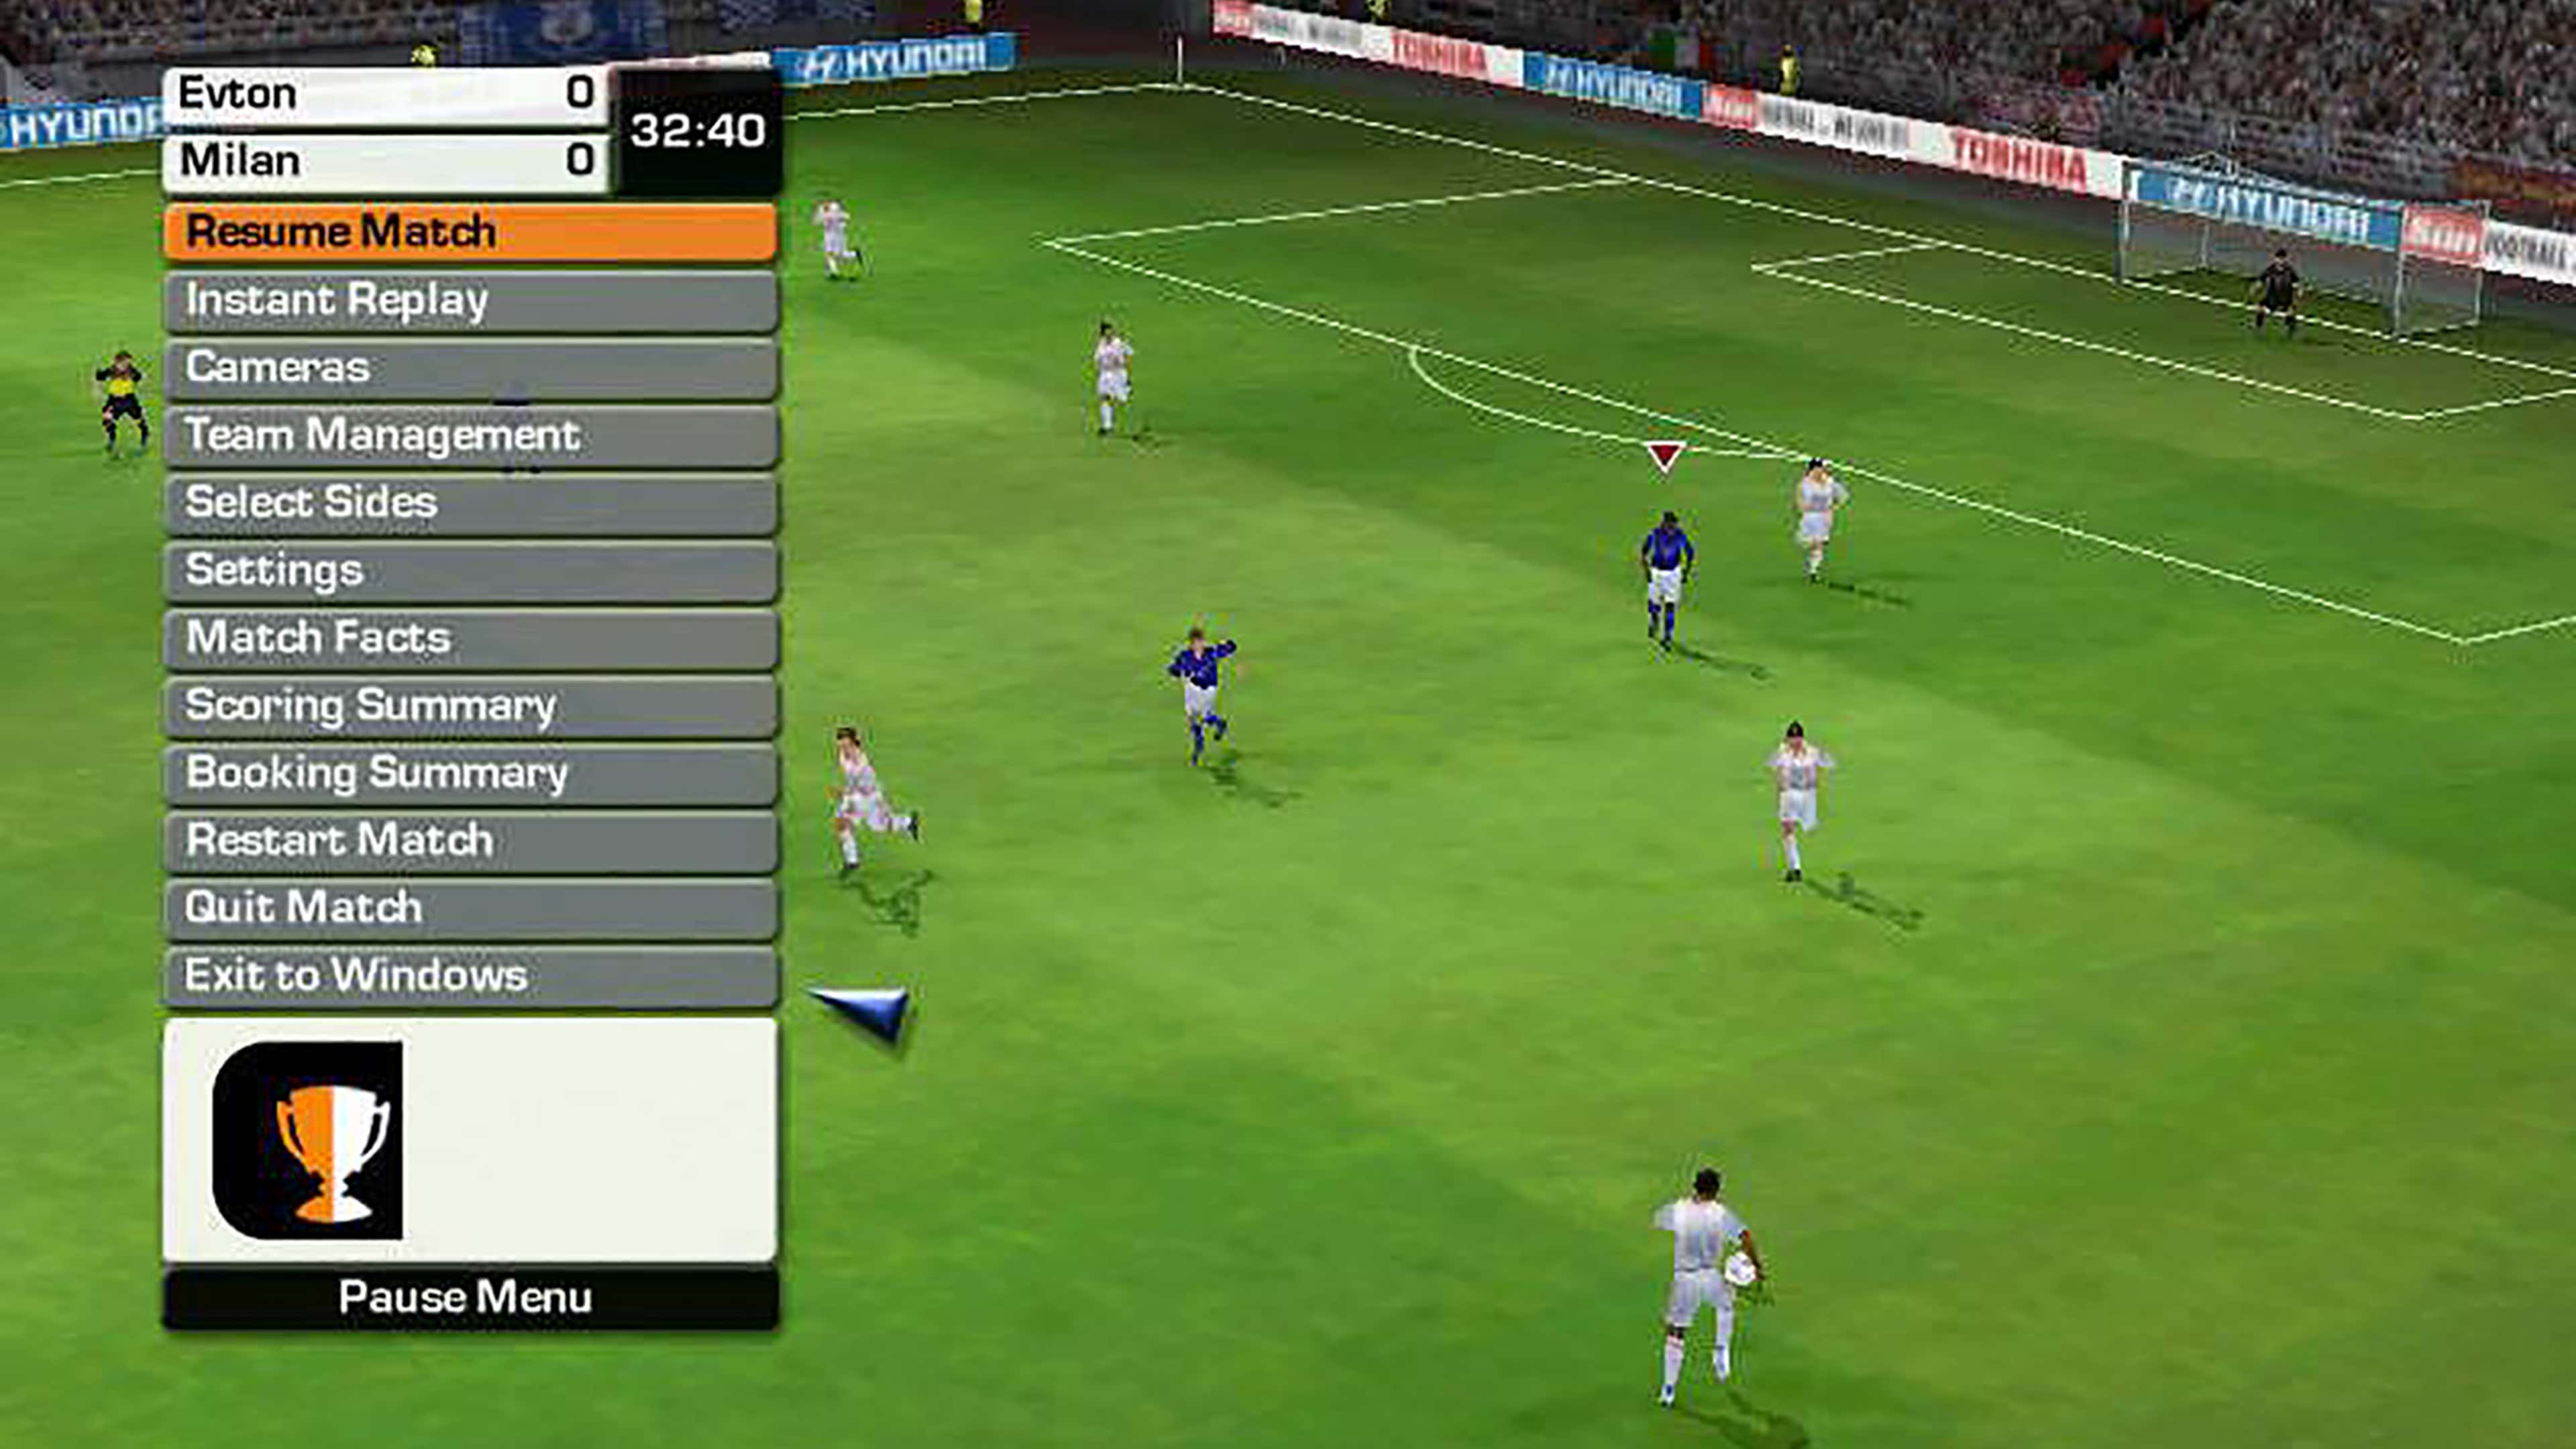 🎮 FIFA 23 no XBOX 360 GAMEPLAY ESPN - Real Madrid vs Atlético de